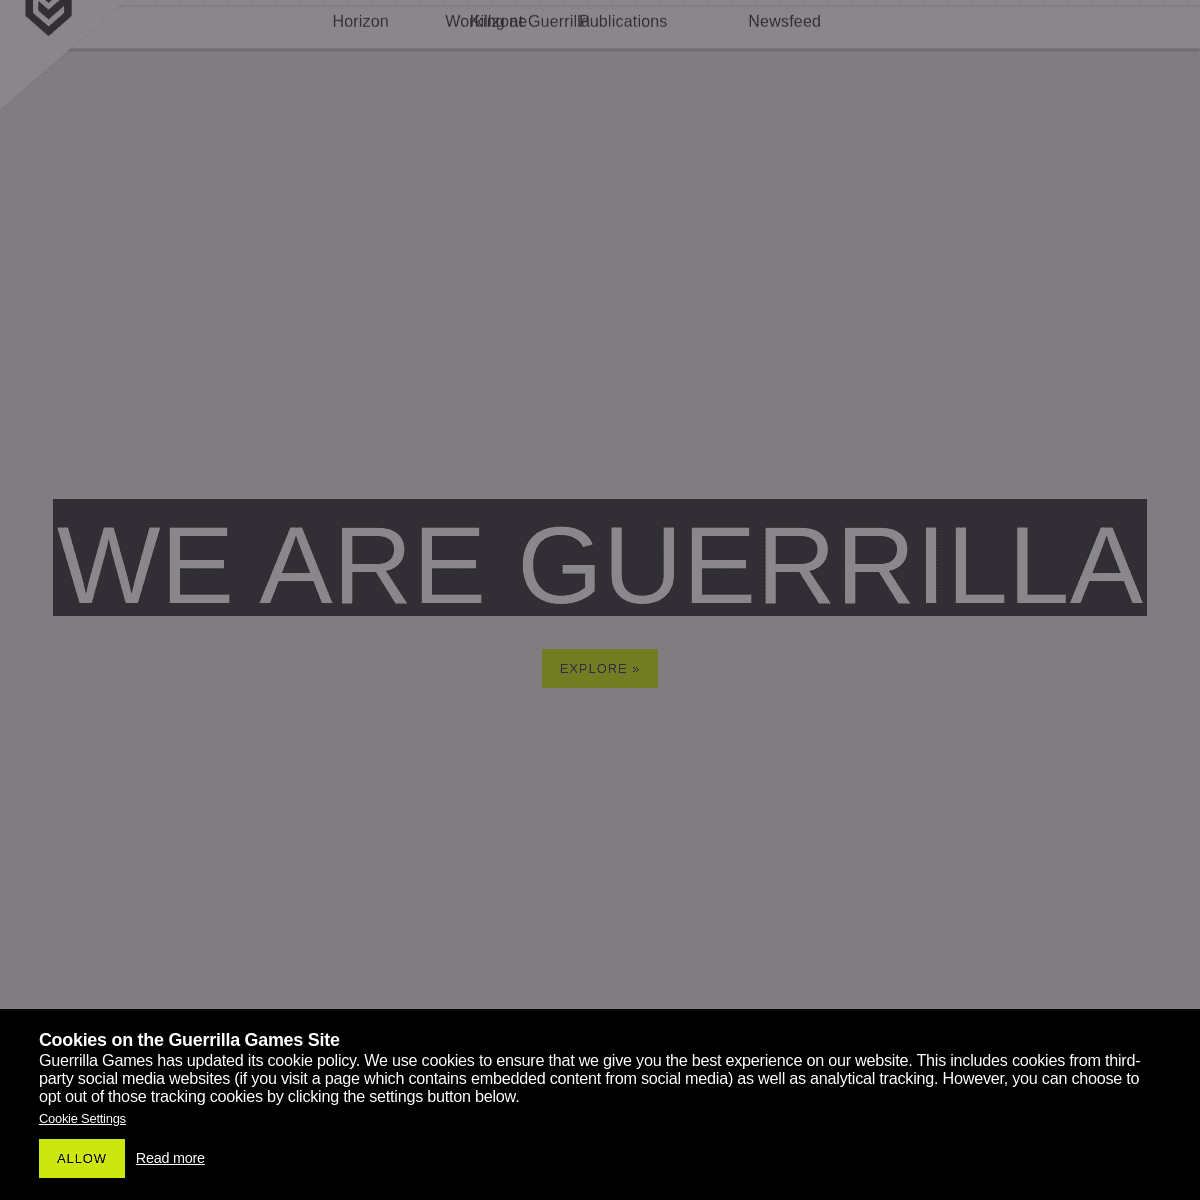 A complete backup of https://guerrilla-games.com